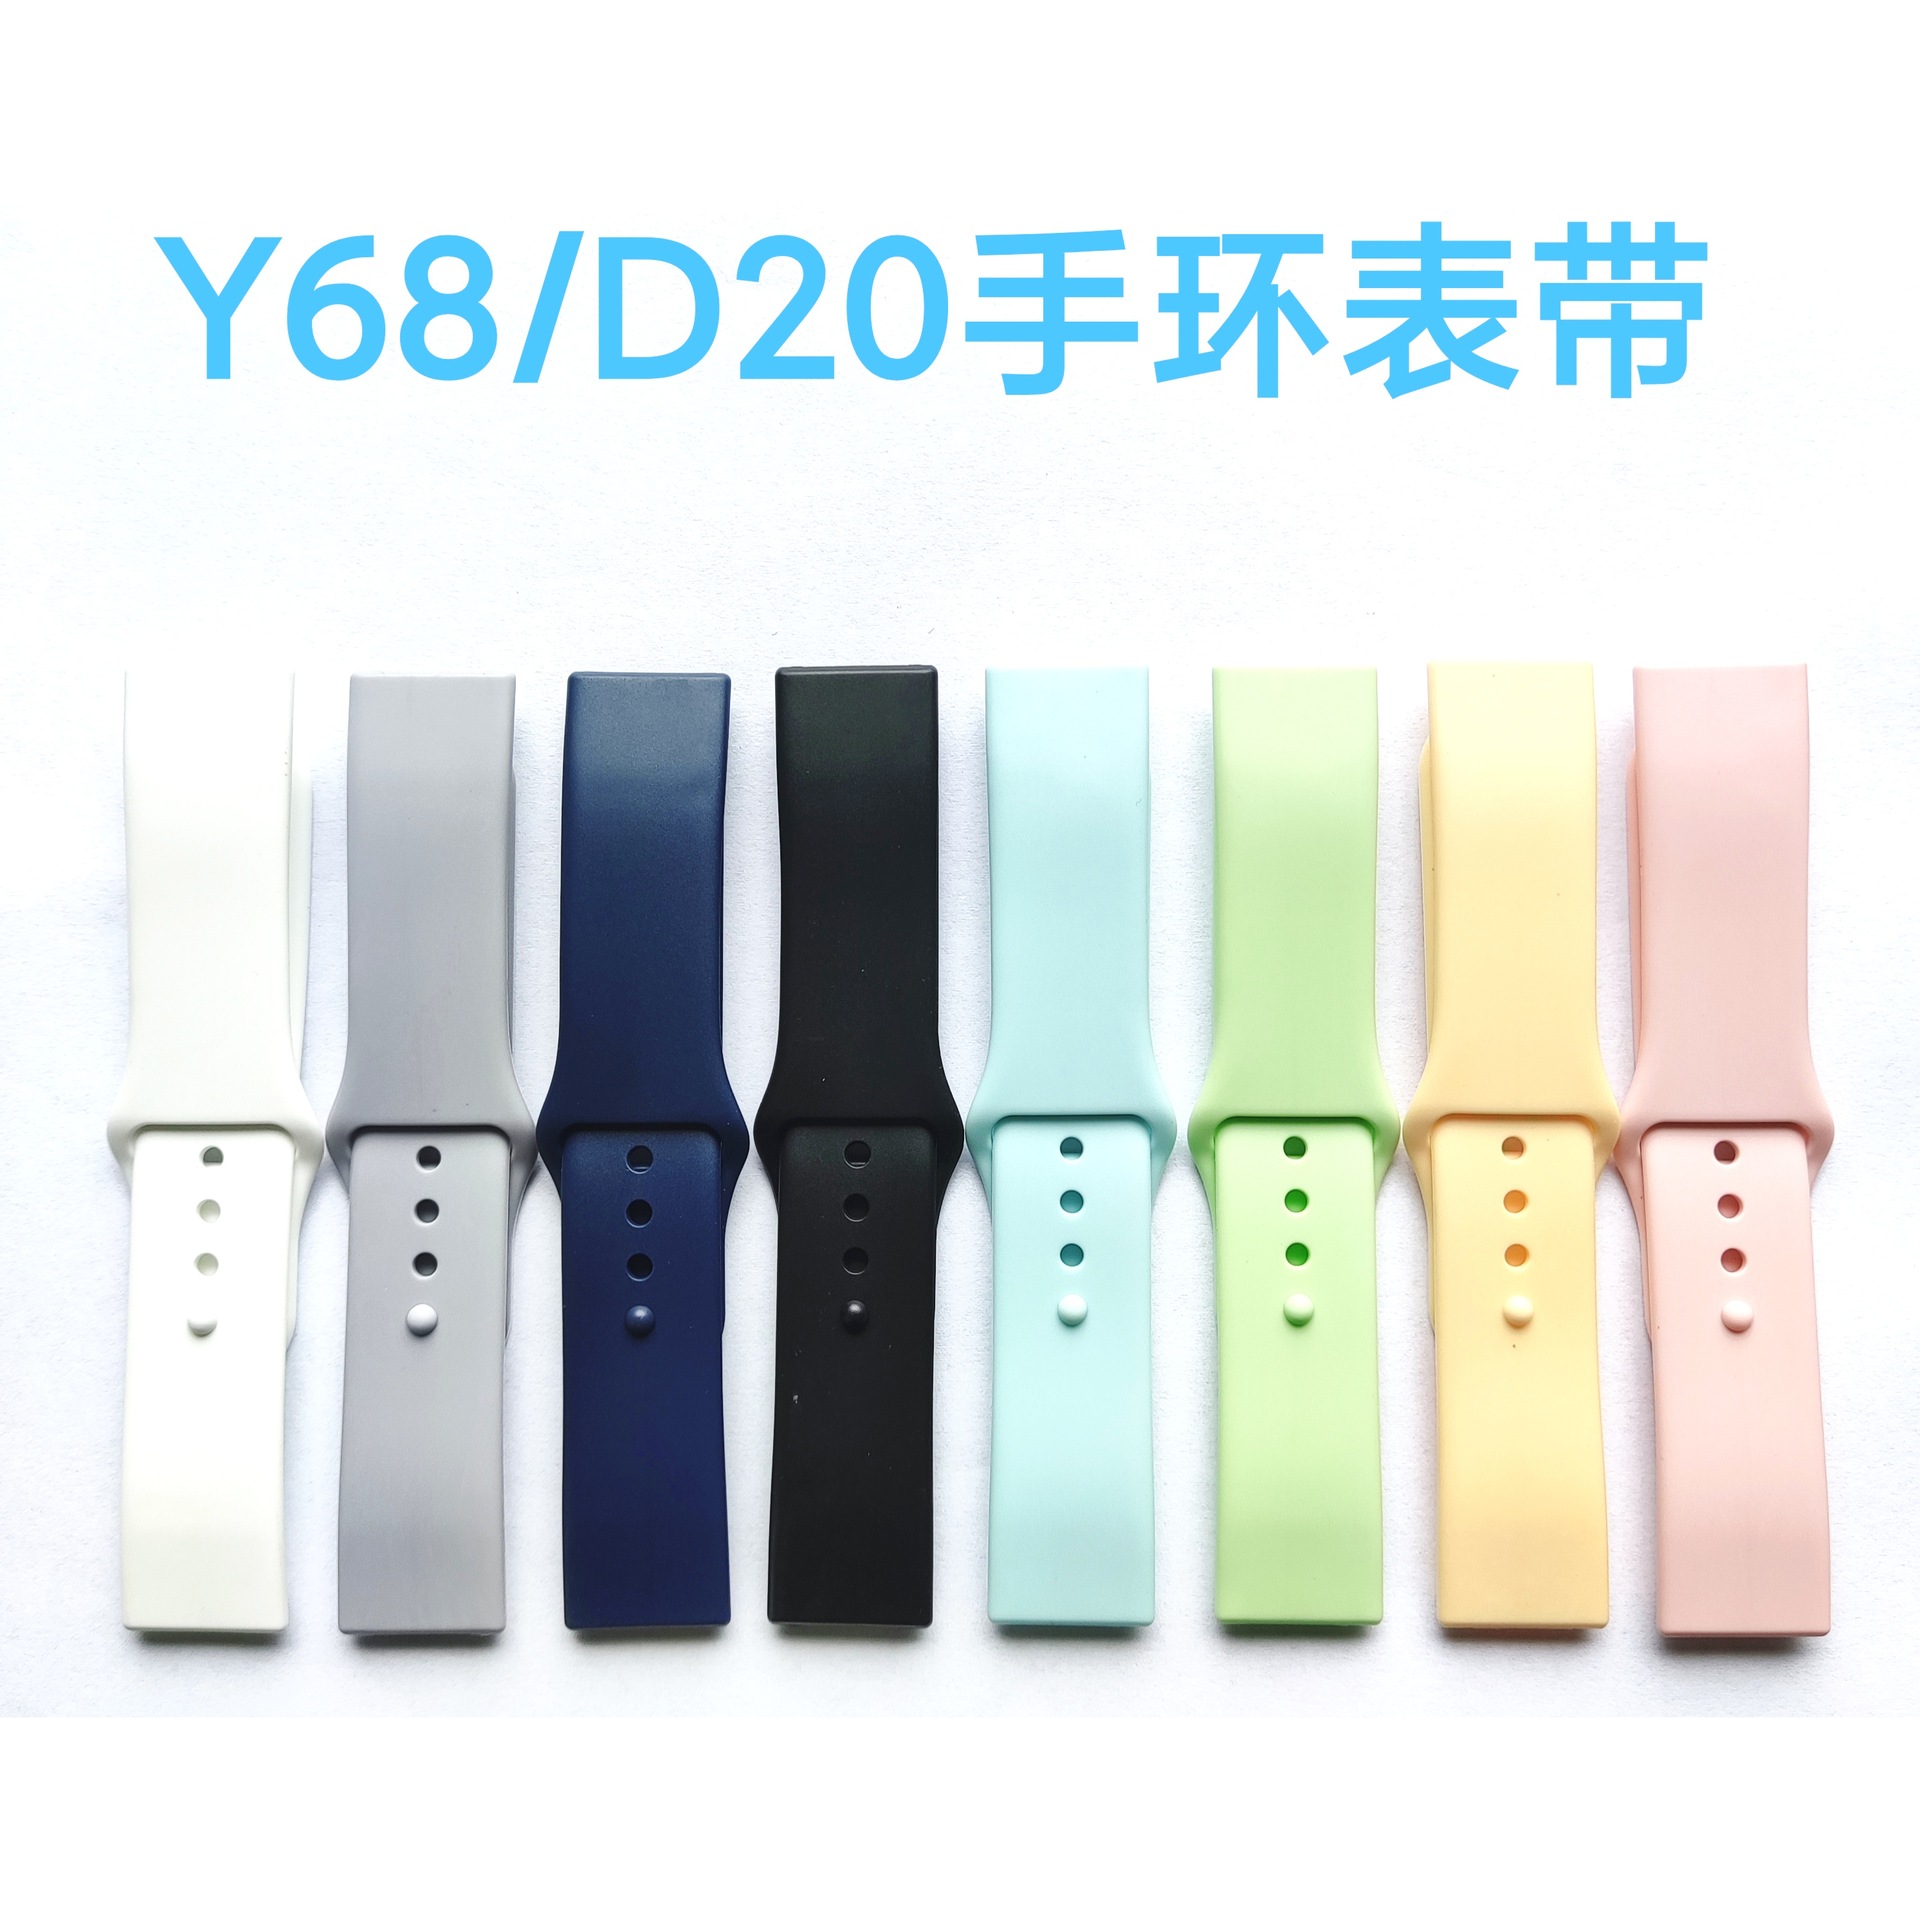 工厂直供智能手环手表y68/D20表带颜色全现货马卡龙色系硅胶TPU